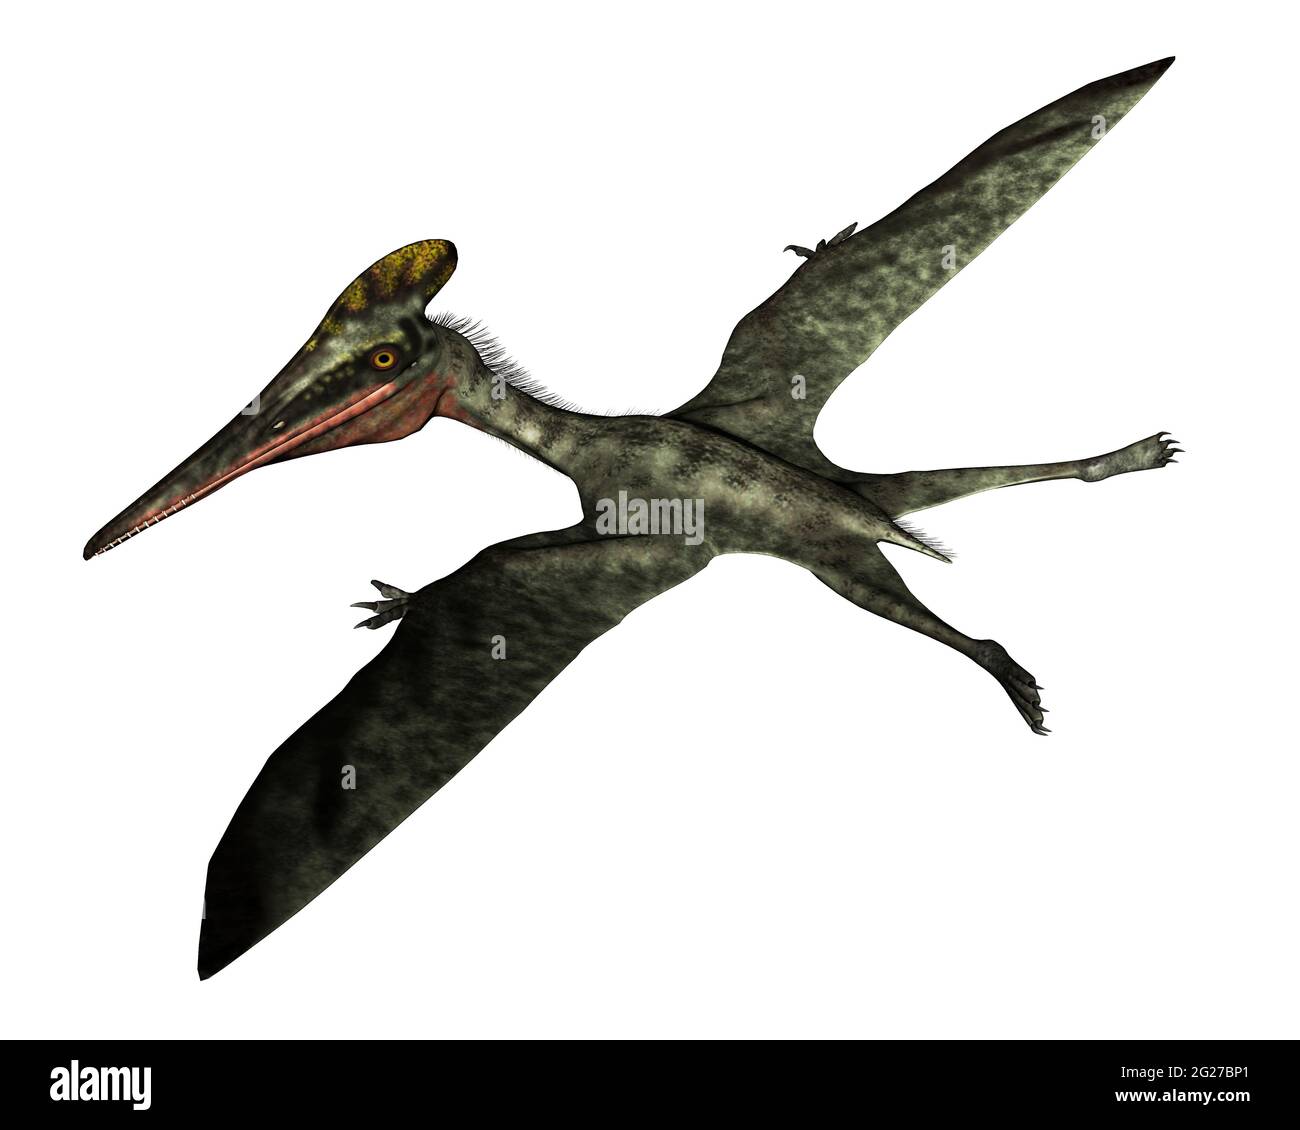 Pterodactylus uccello preistorico volare, isolato su sfondo bianco. Foto Stock